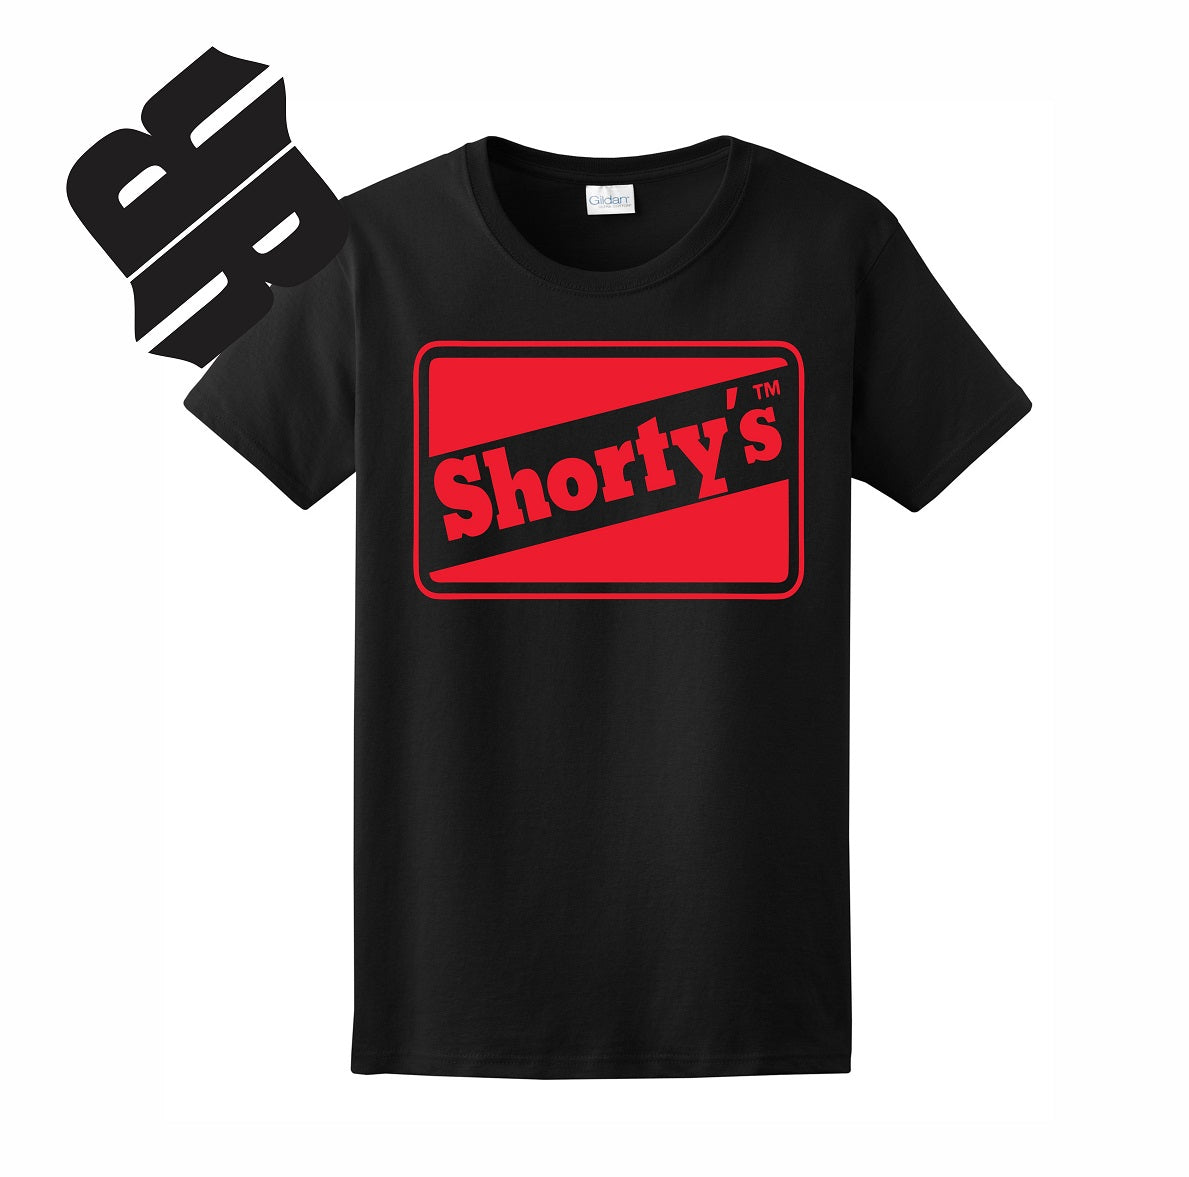 Skate Men's Shirt -Shorty's (Black) -Red Print - MYSTYLEMYCLOTHING